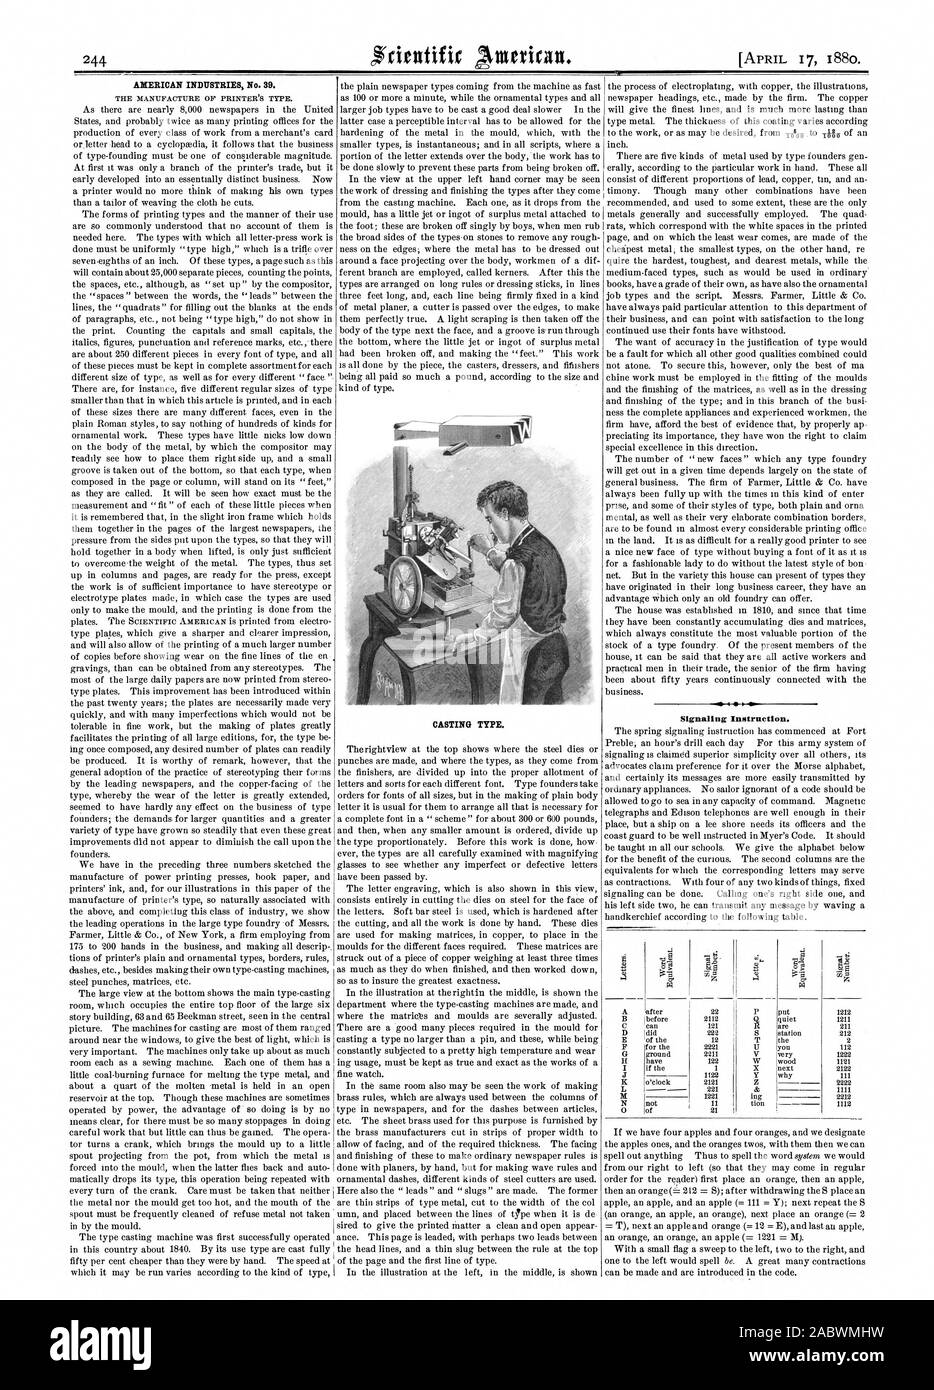 Industrie americane n. 39. Tipo di colata. Istruzioni di segnalazione. Un tiOD 0, Scientific American, 1880-04-17 Foto Stock